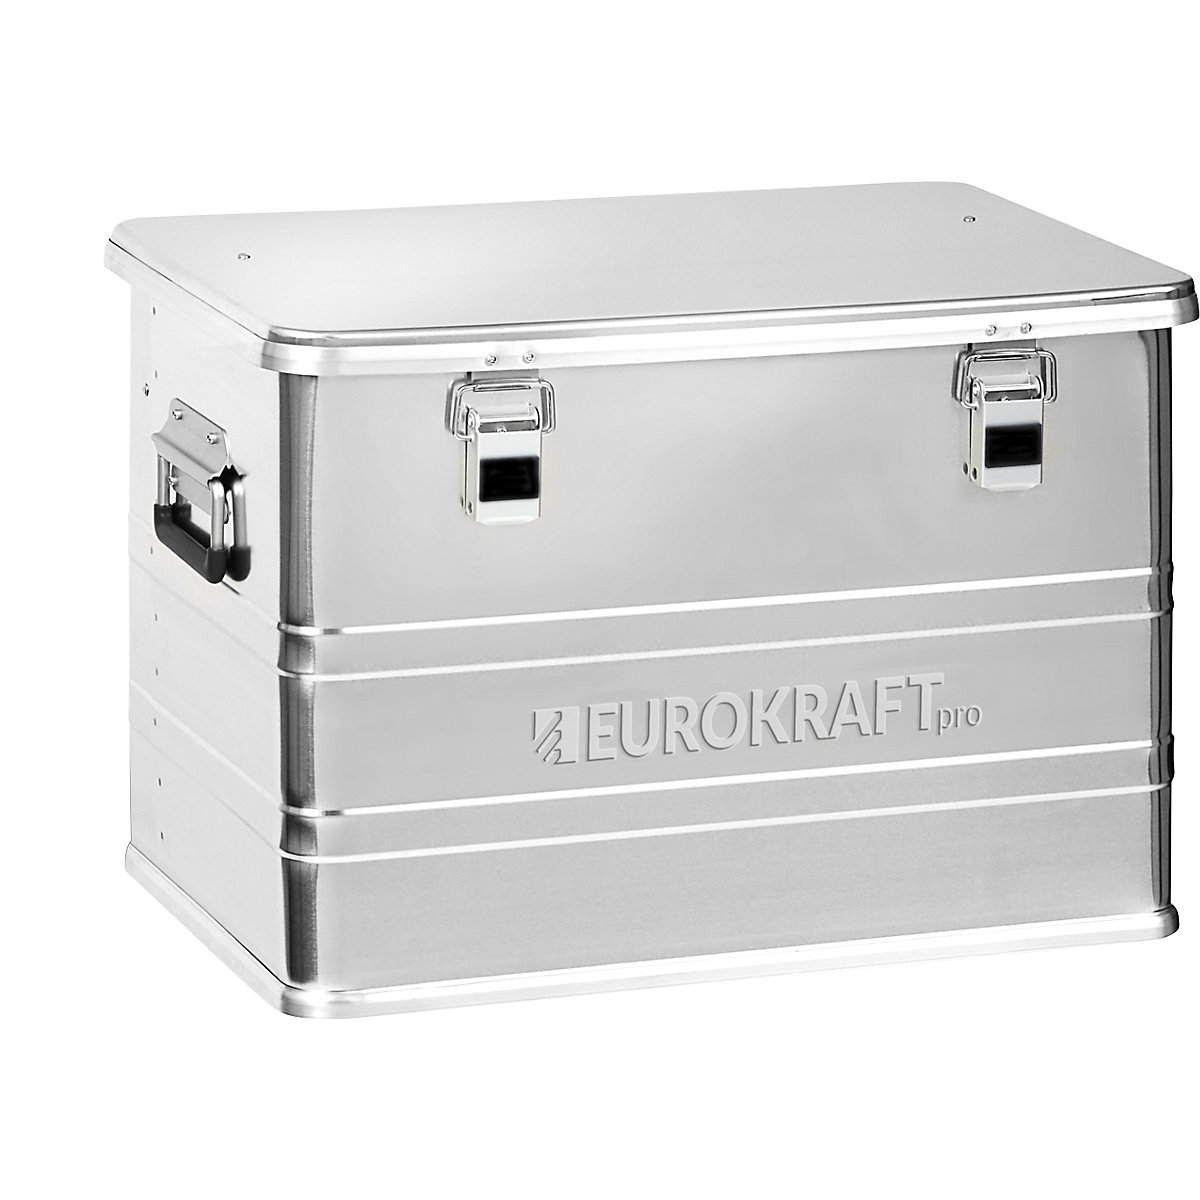 Pojemnik aluminiowy Industry – eurokraft pro, poj. 73 l, zewn. dł. x szer. x wys. 580 x 385 x 398 mm-1